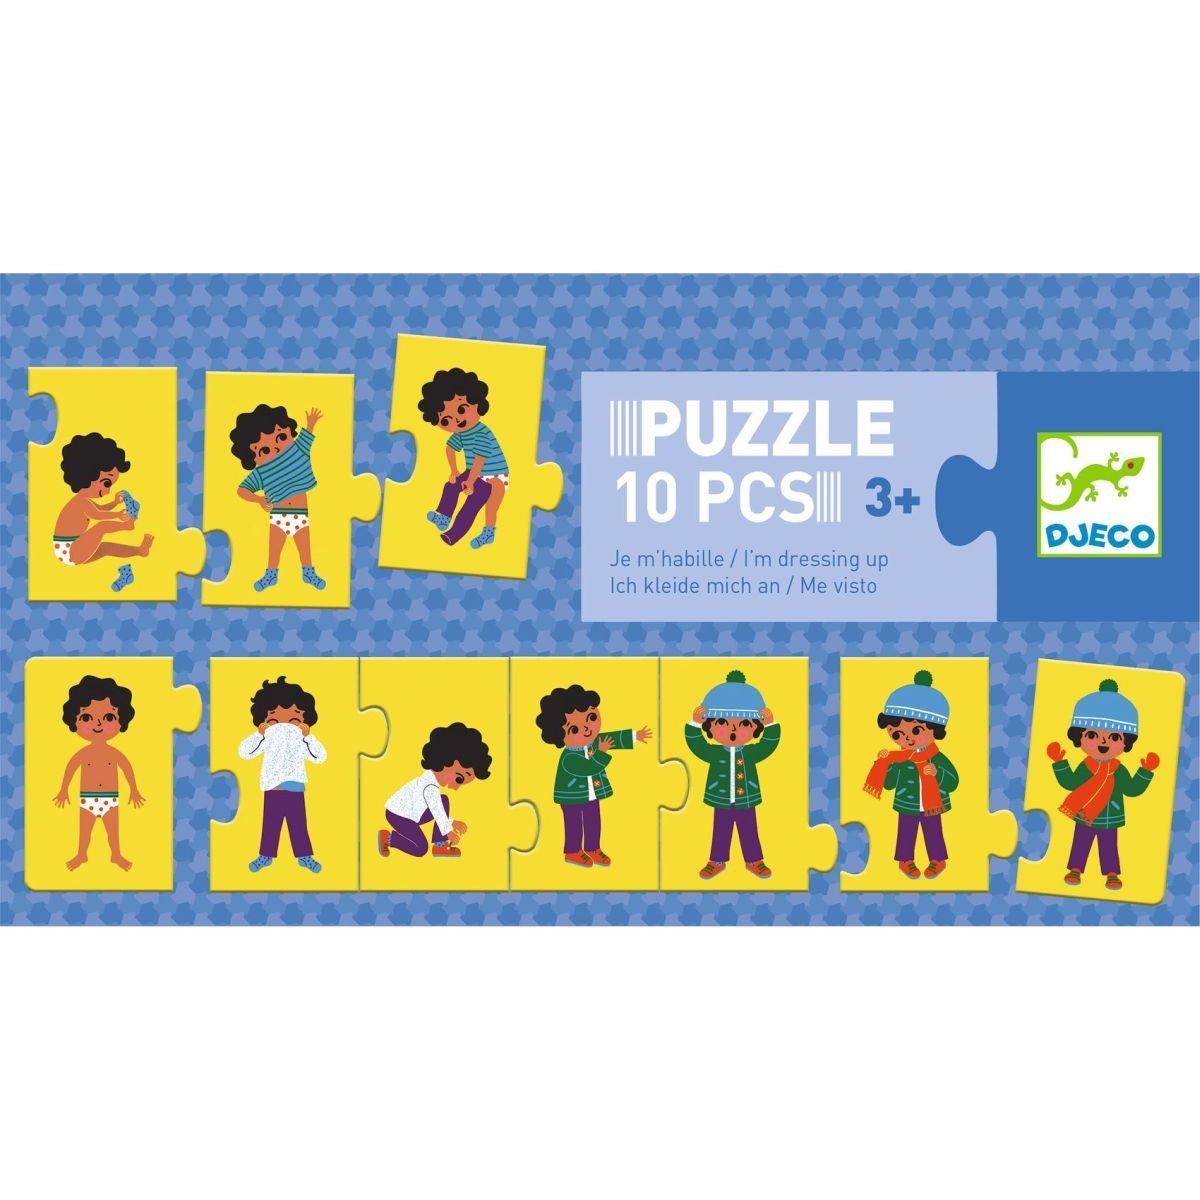 DJECO Lernspiele Anziehen, Puzzle 10 Puzzleteile Puzzle